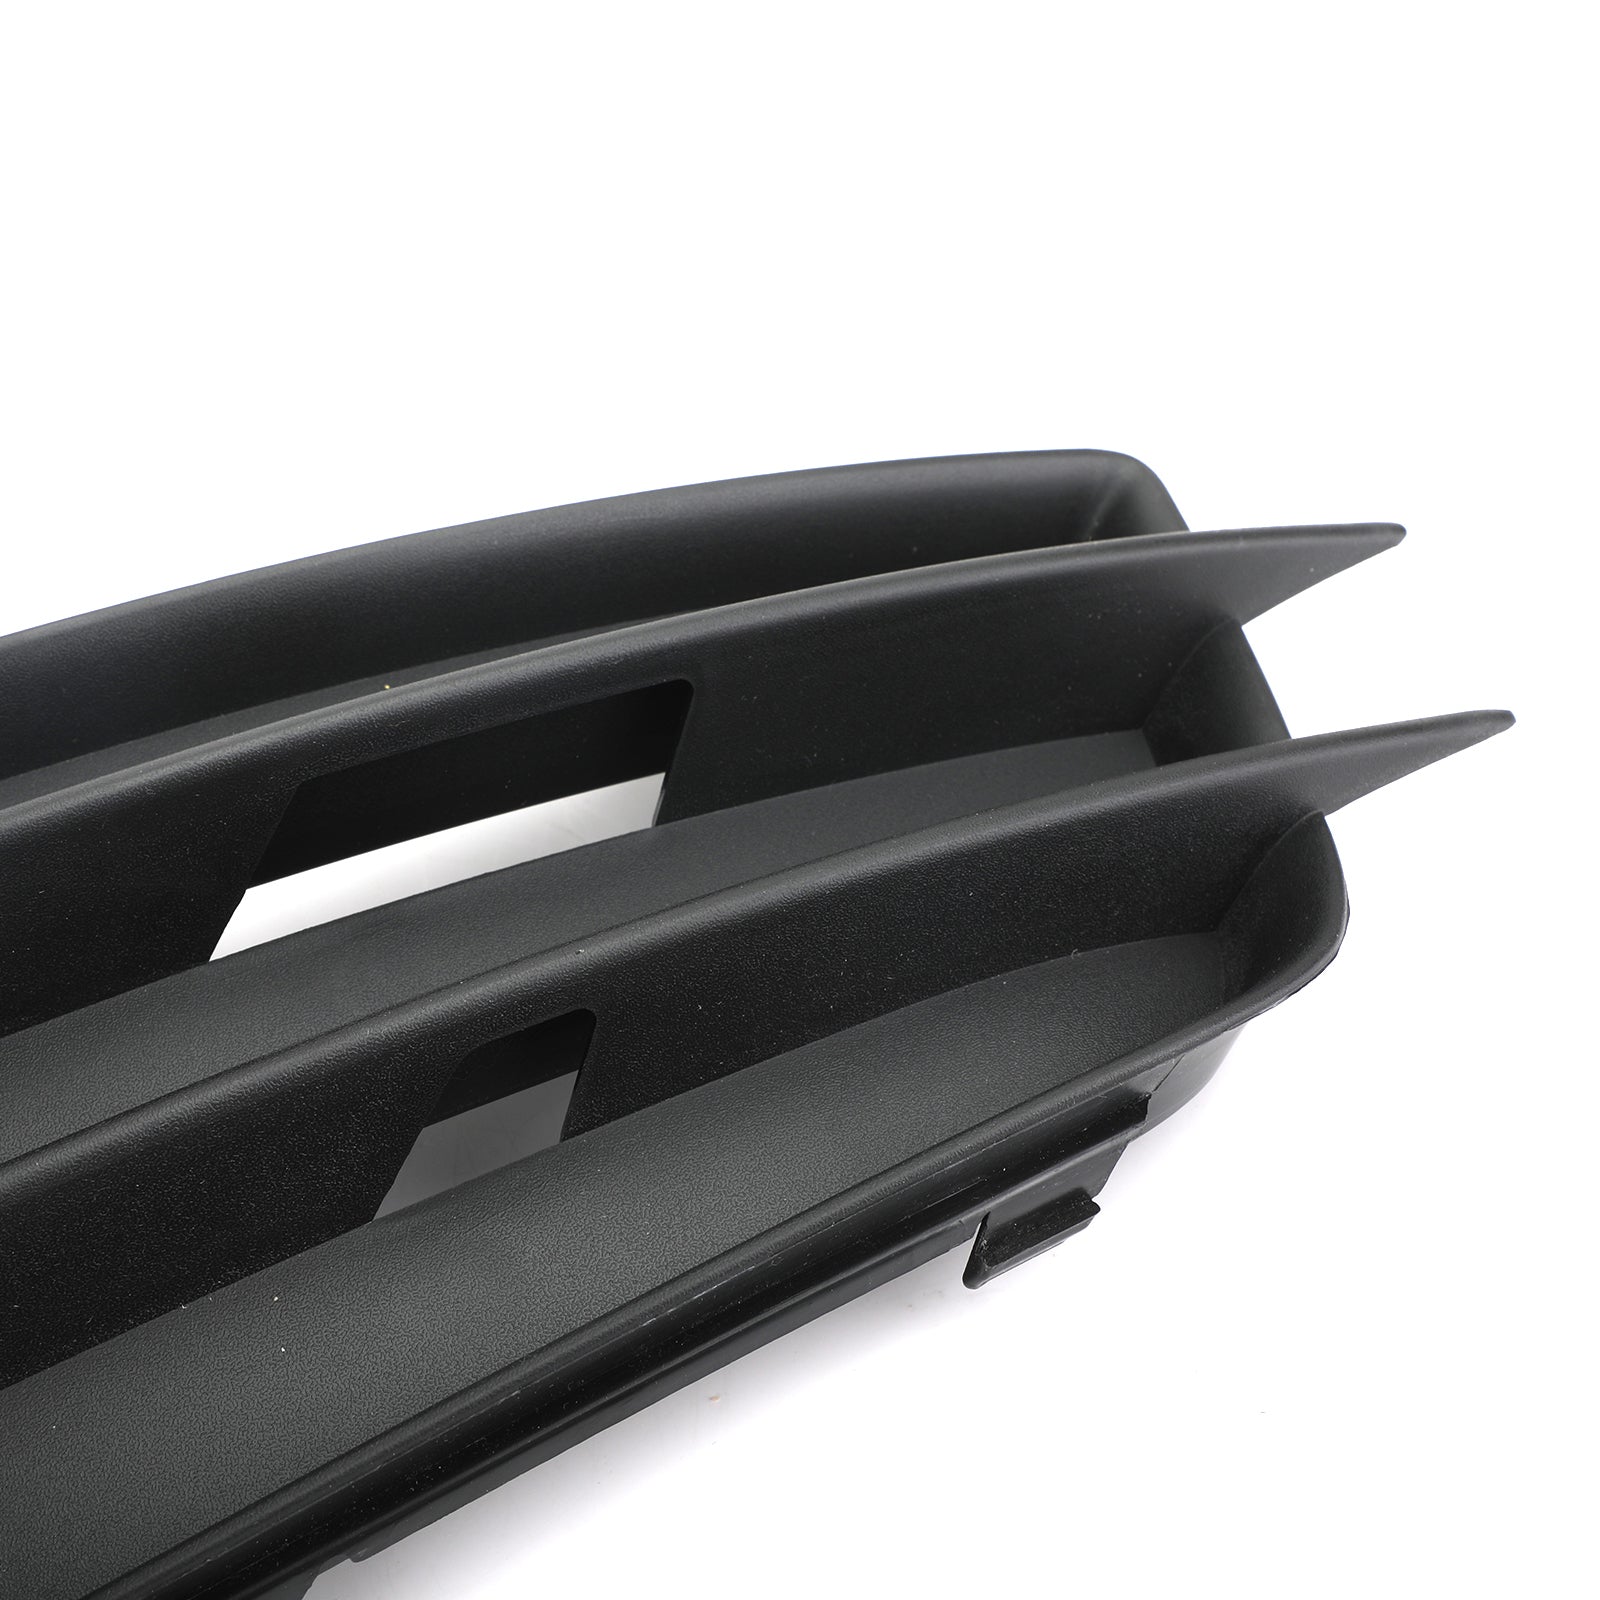 Lato sinistro nero opaco fendinebbia griglia paraurti S-Line per AUDI A4 B8 2008-2012 generico